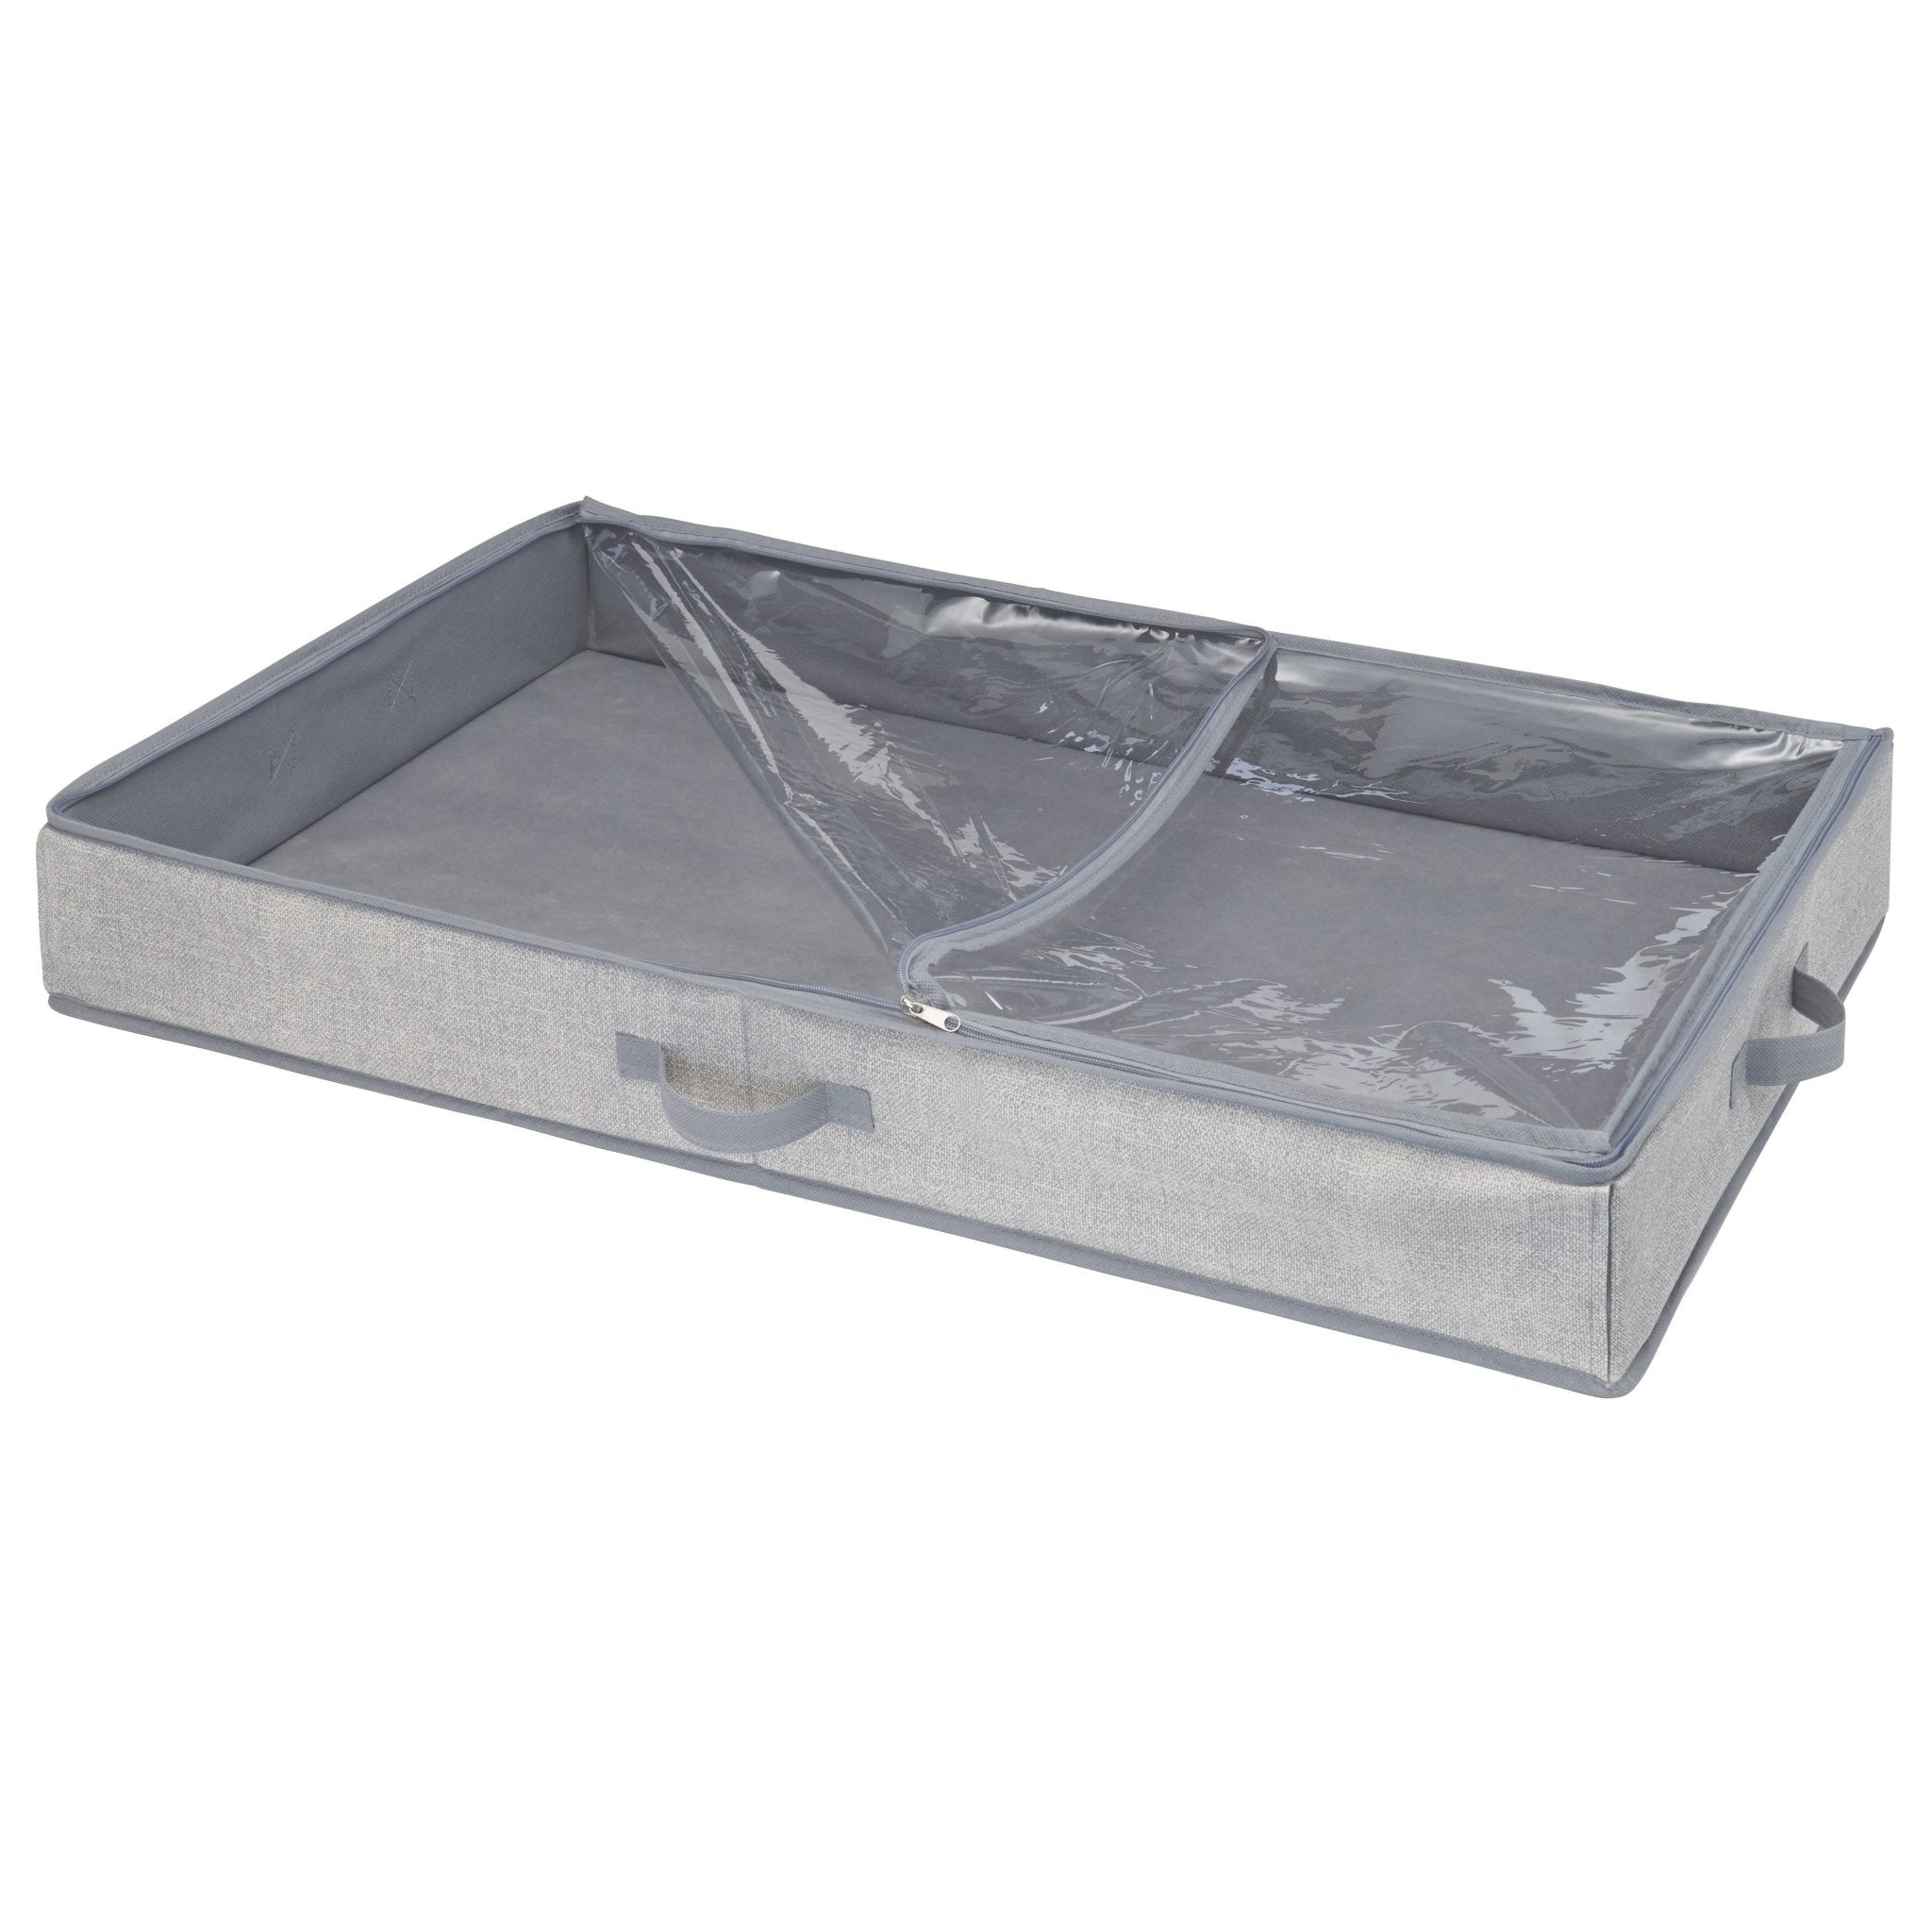 iDesign ALDO - Aufbewahrungsbox - Unterbett-Lagerung - BINS AND BOXES